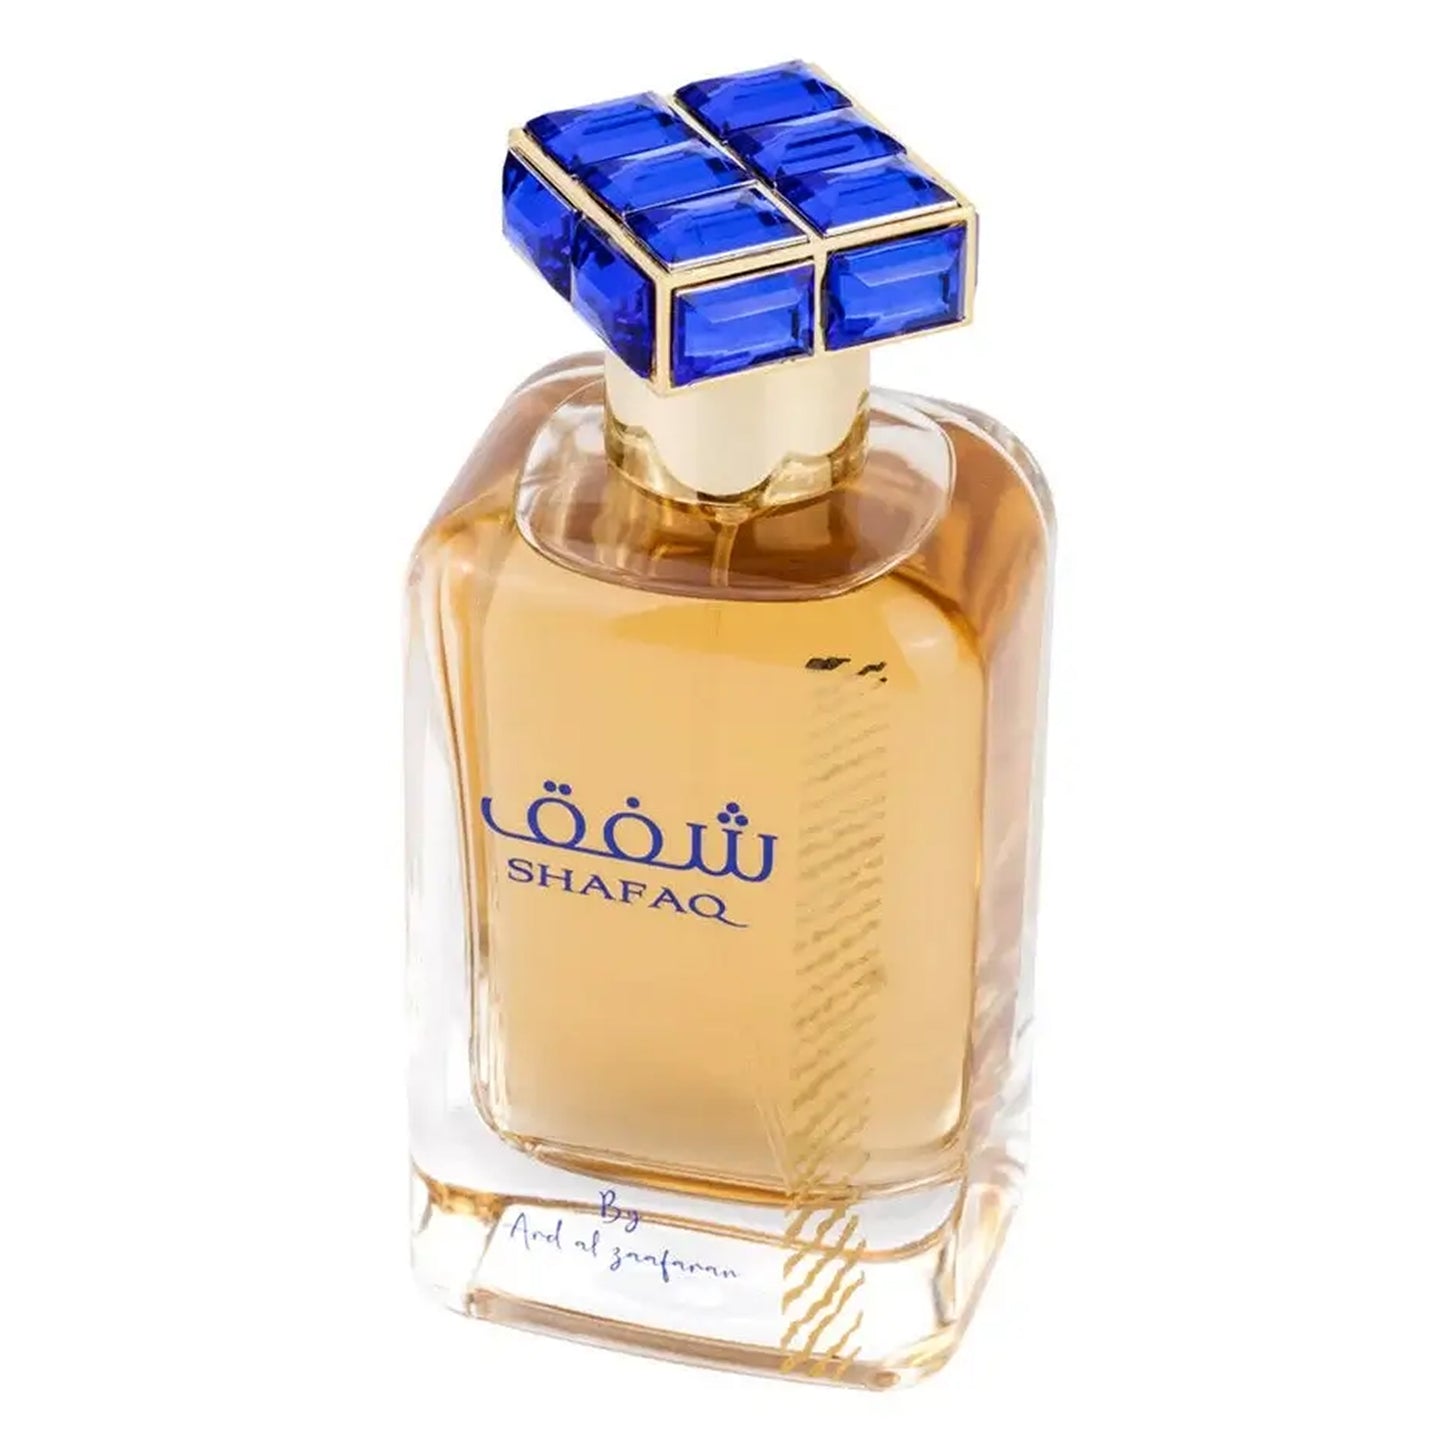 Shafaq Perfume 100ml EDP by Ard Al Zaafaran - Unsex